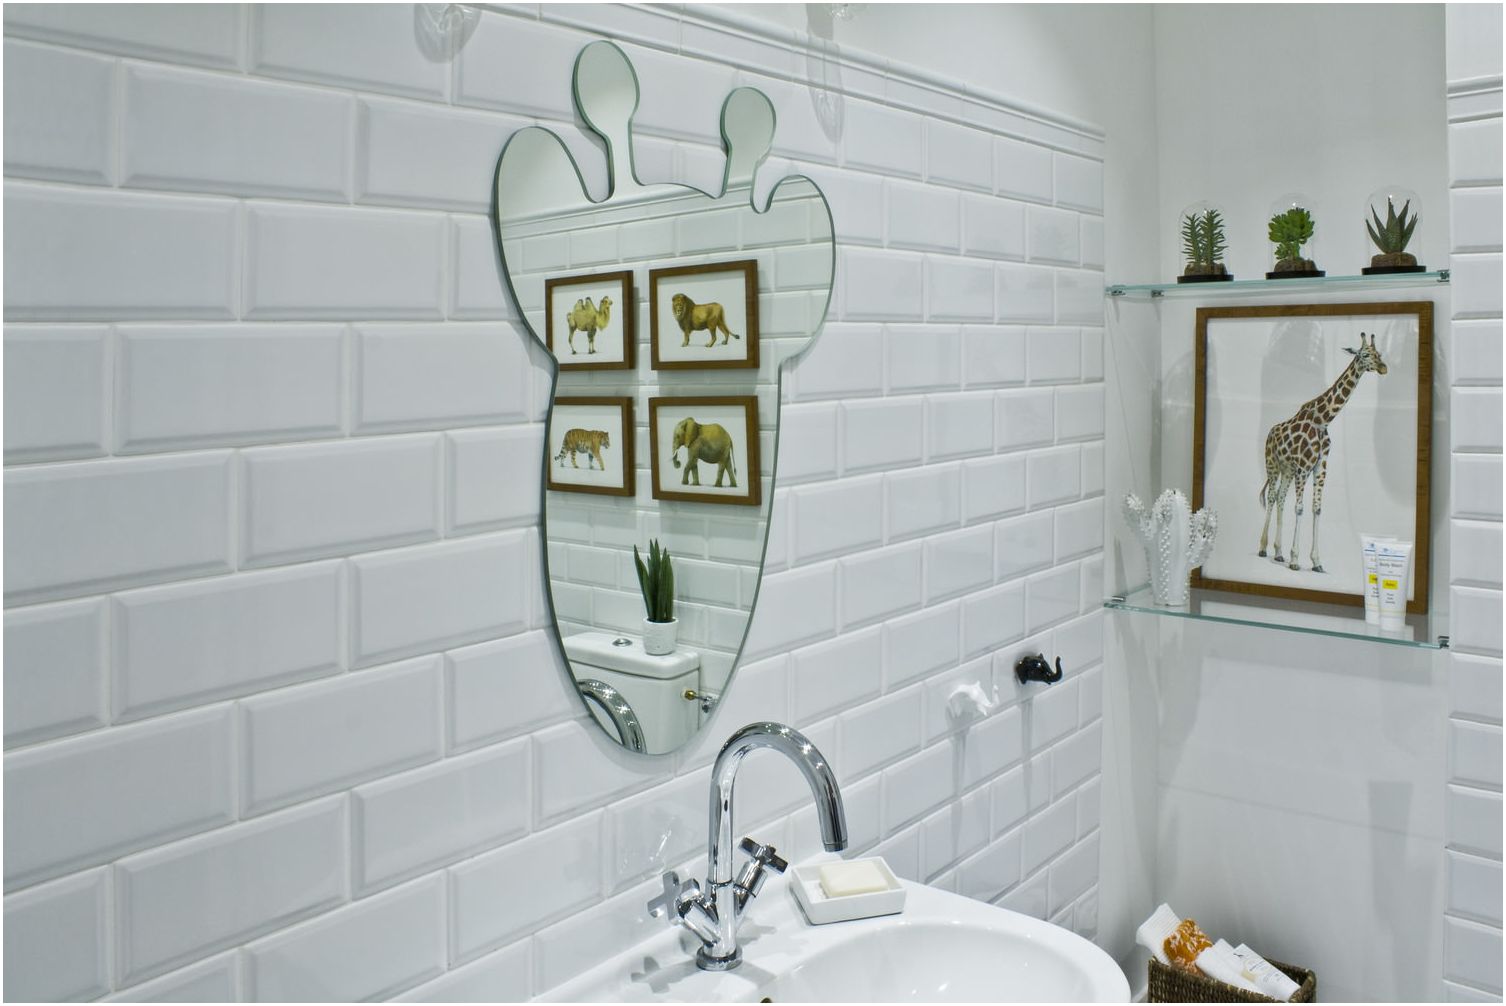 spiegel in de vorm van een giraffe in het ontwerp van een kinderbadkamer